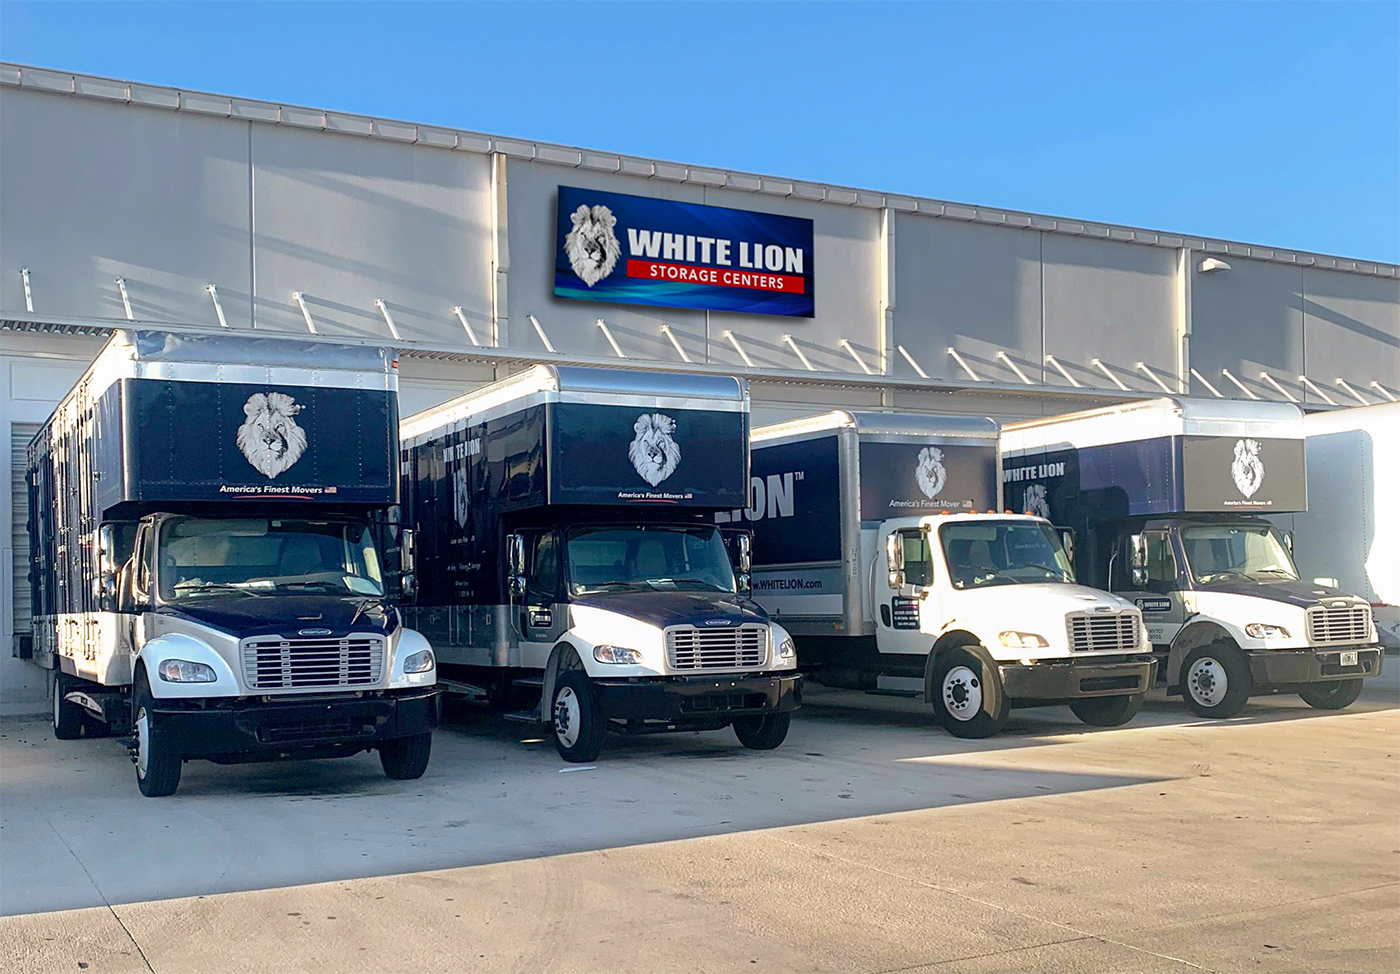 white lion's fleet of trucks